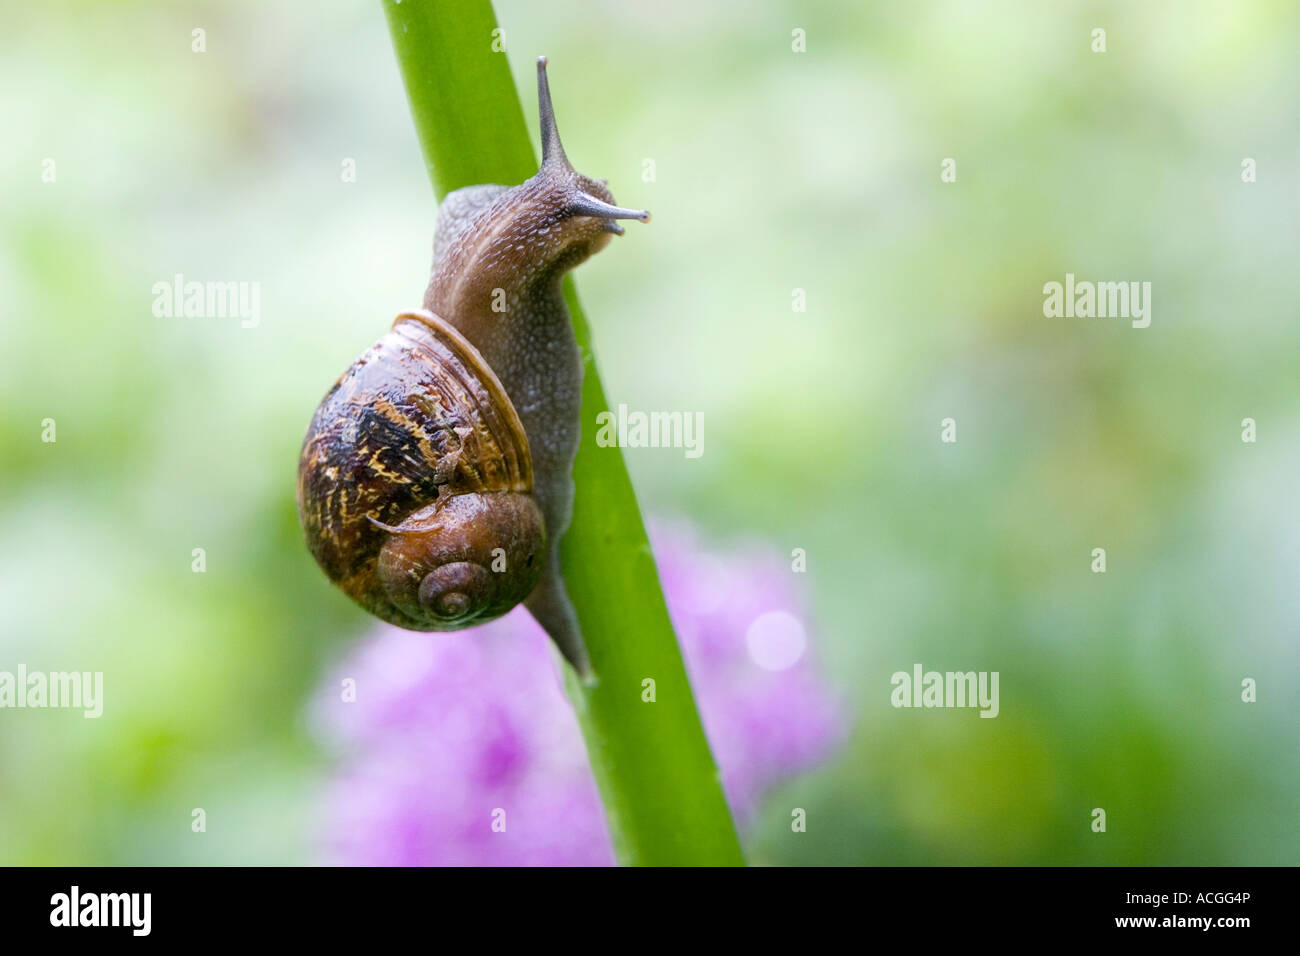 Cornu aspersum. Snail crawling up a flower stem in an English garden Stock Photo